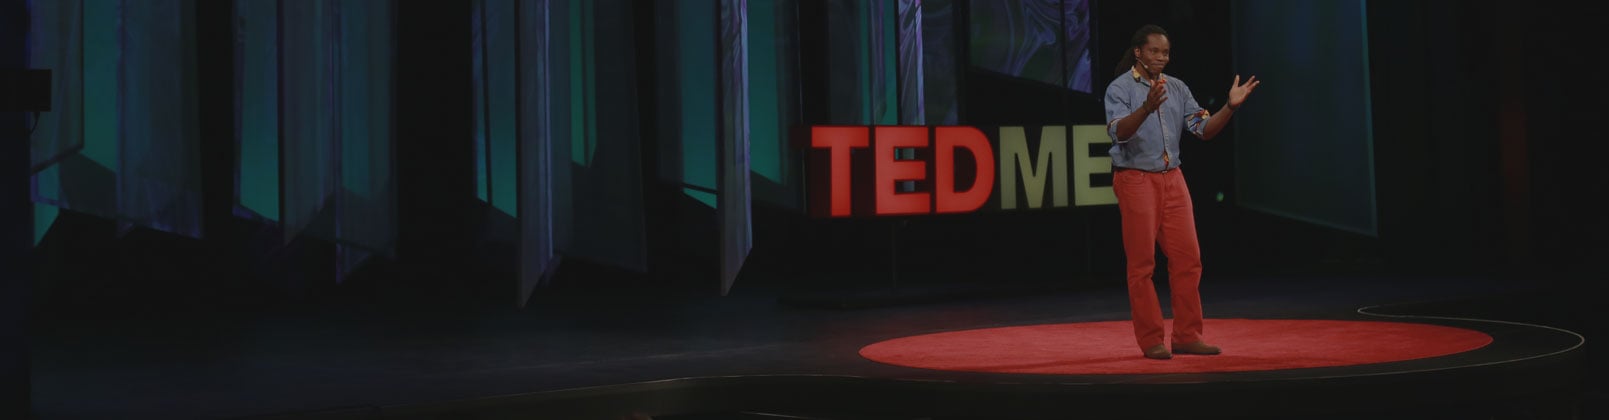 TEDMED live stream Thursday, November 19th, 2015